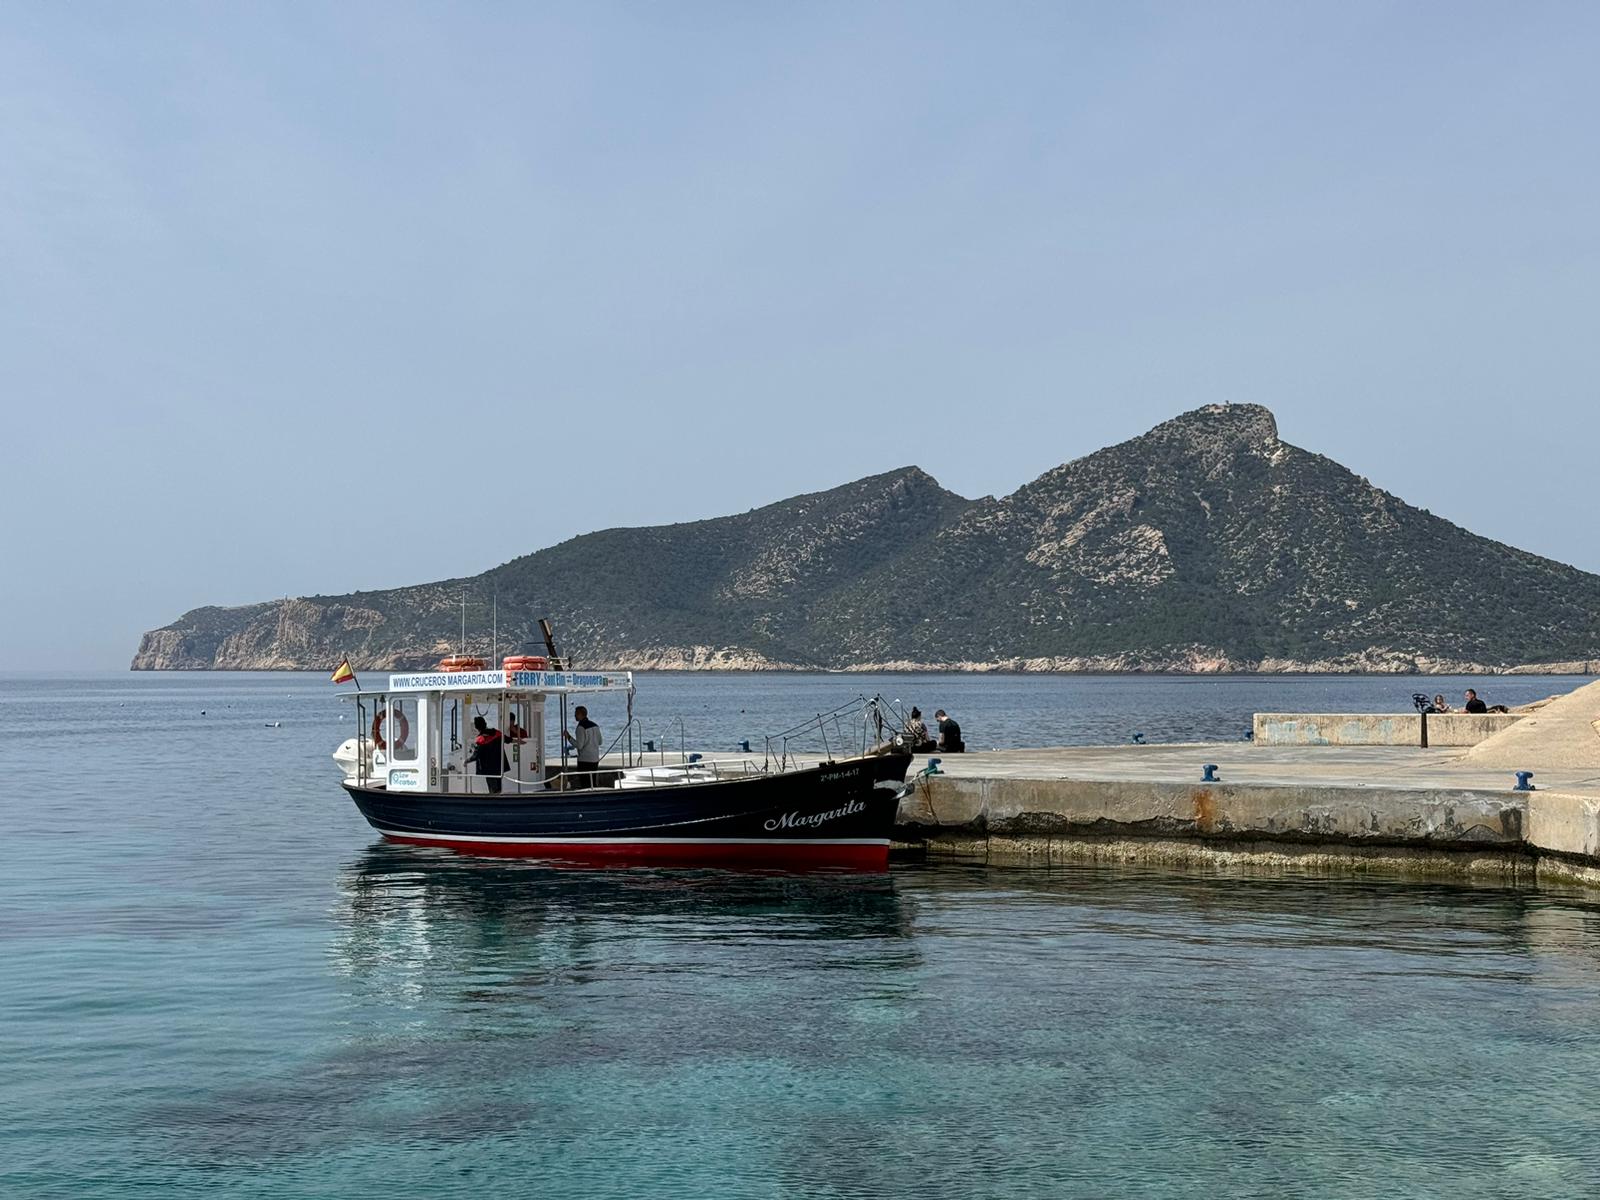 Cómo Llegar a la Dragonera: Tu Guía para una Aventura en Mallorca